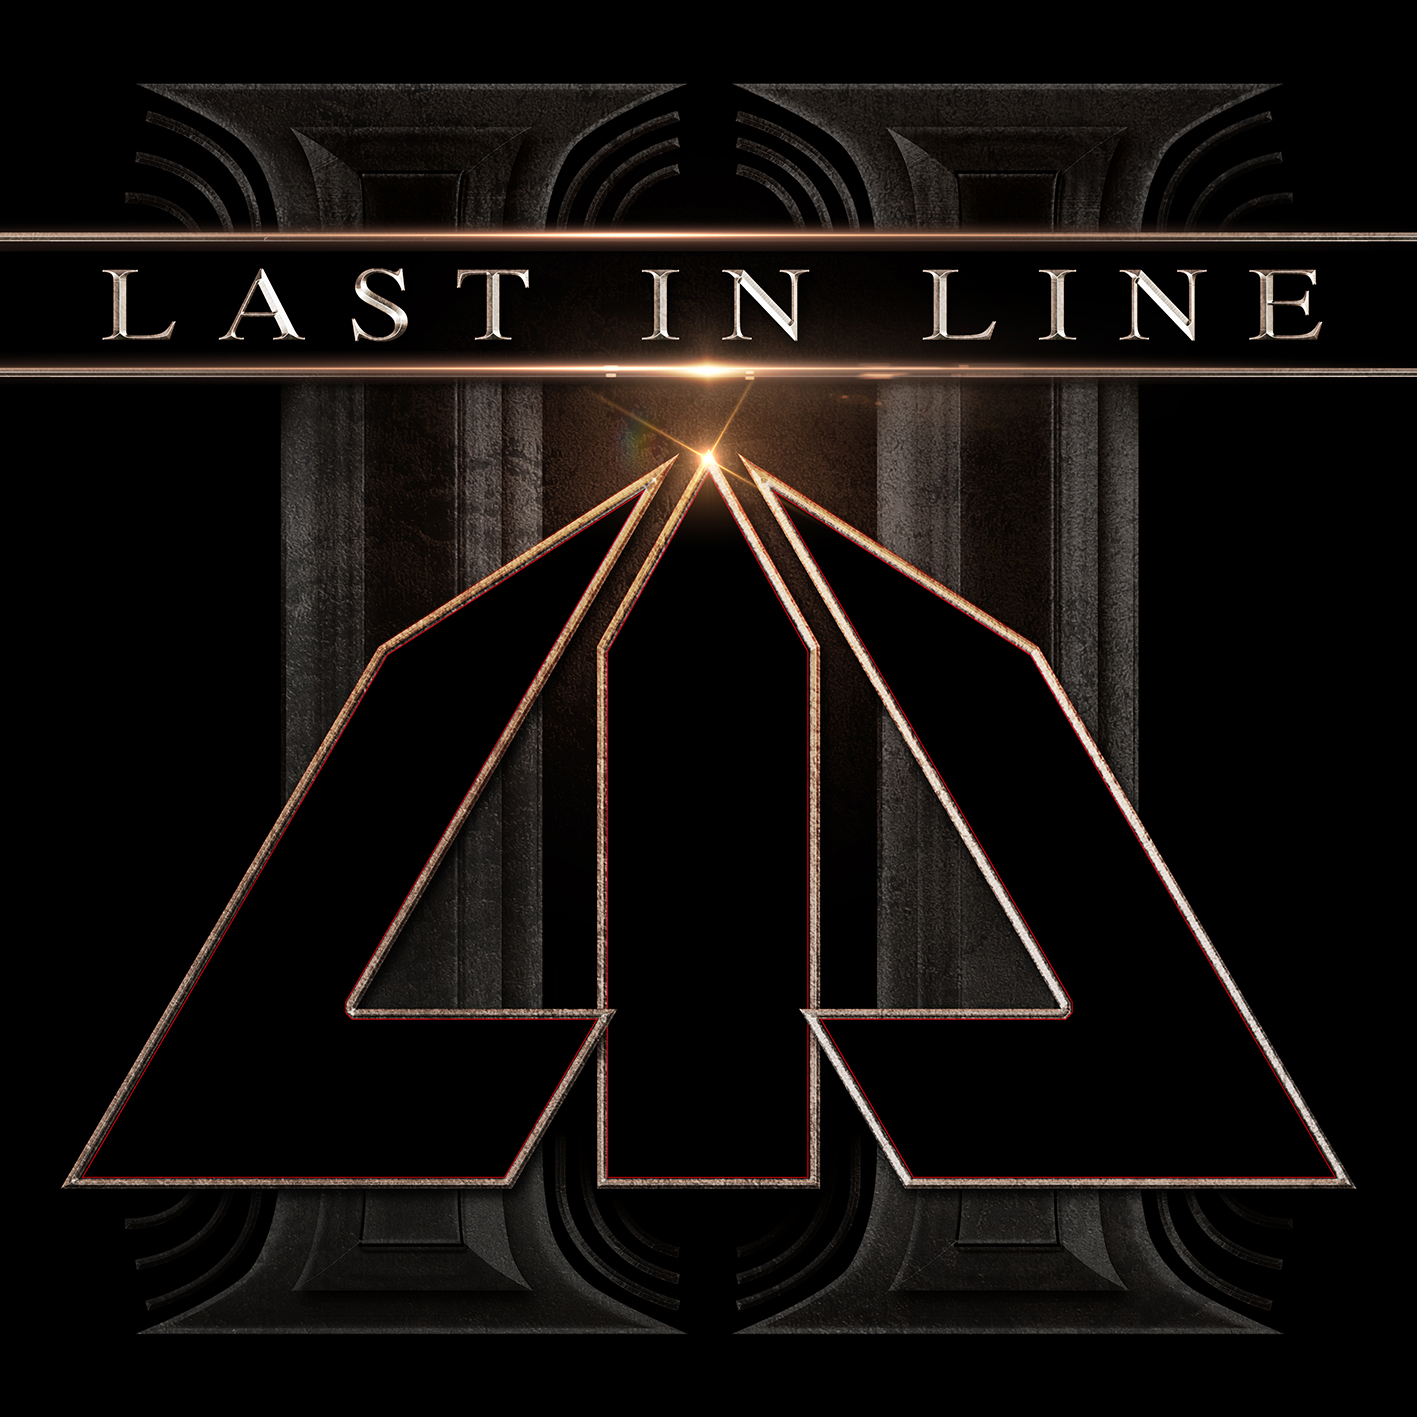 Last In Line - II